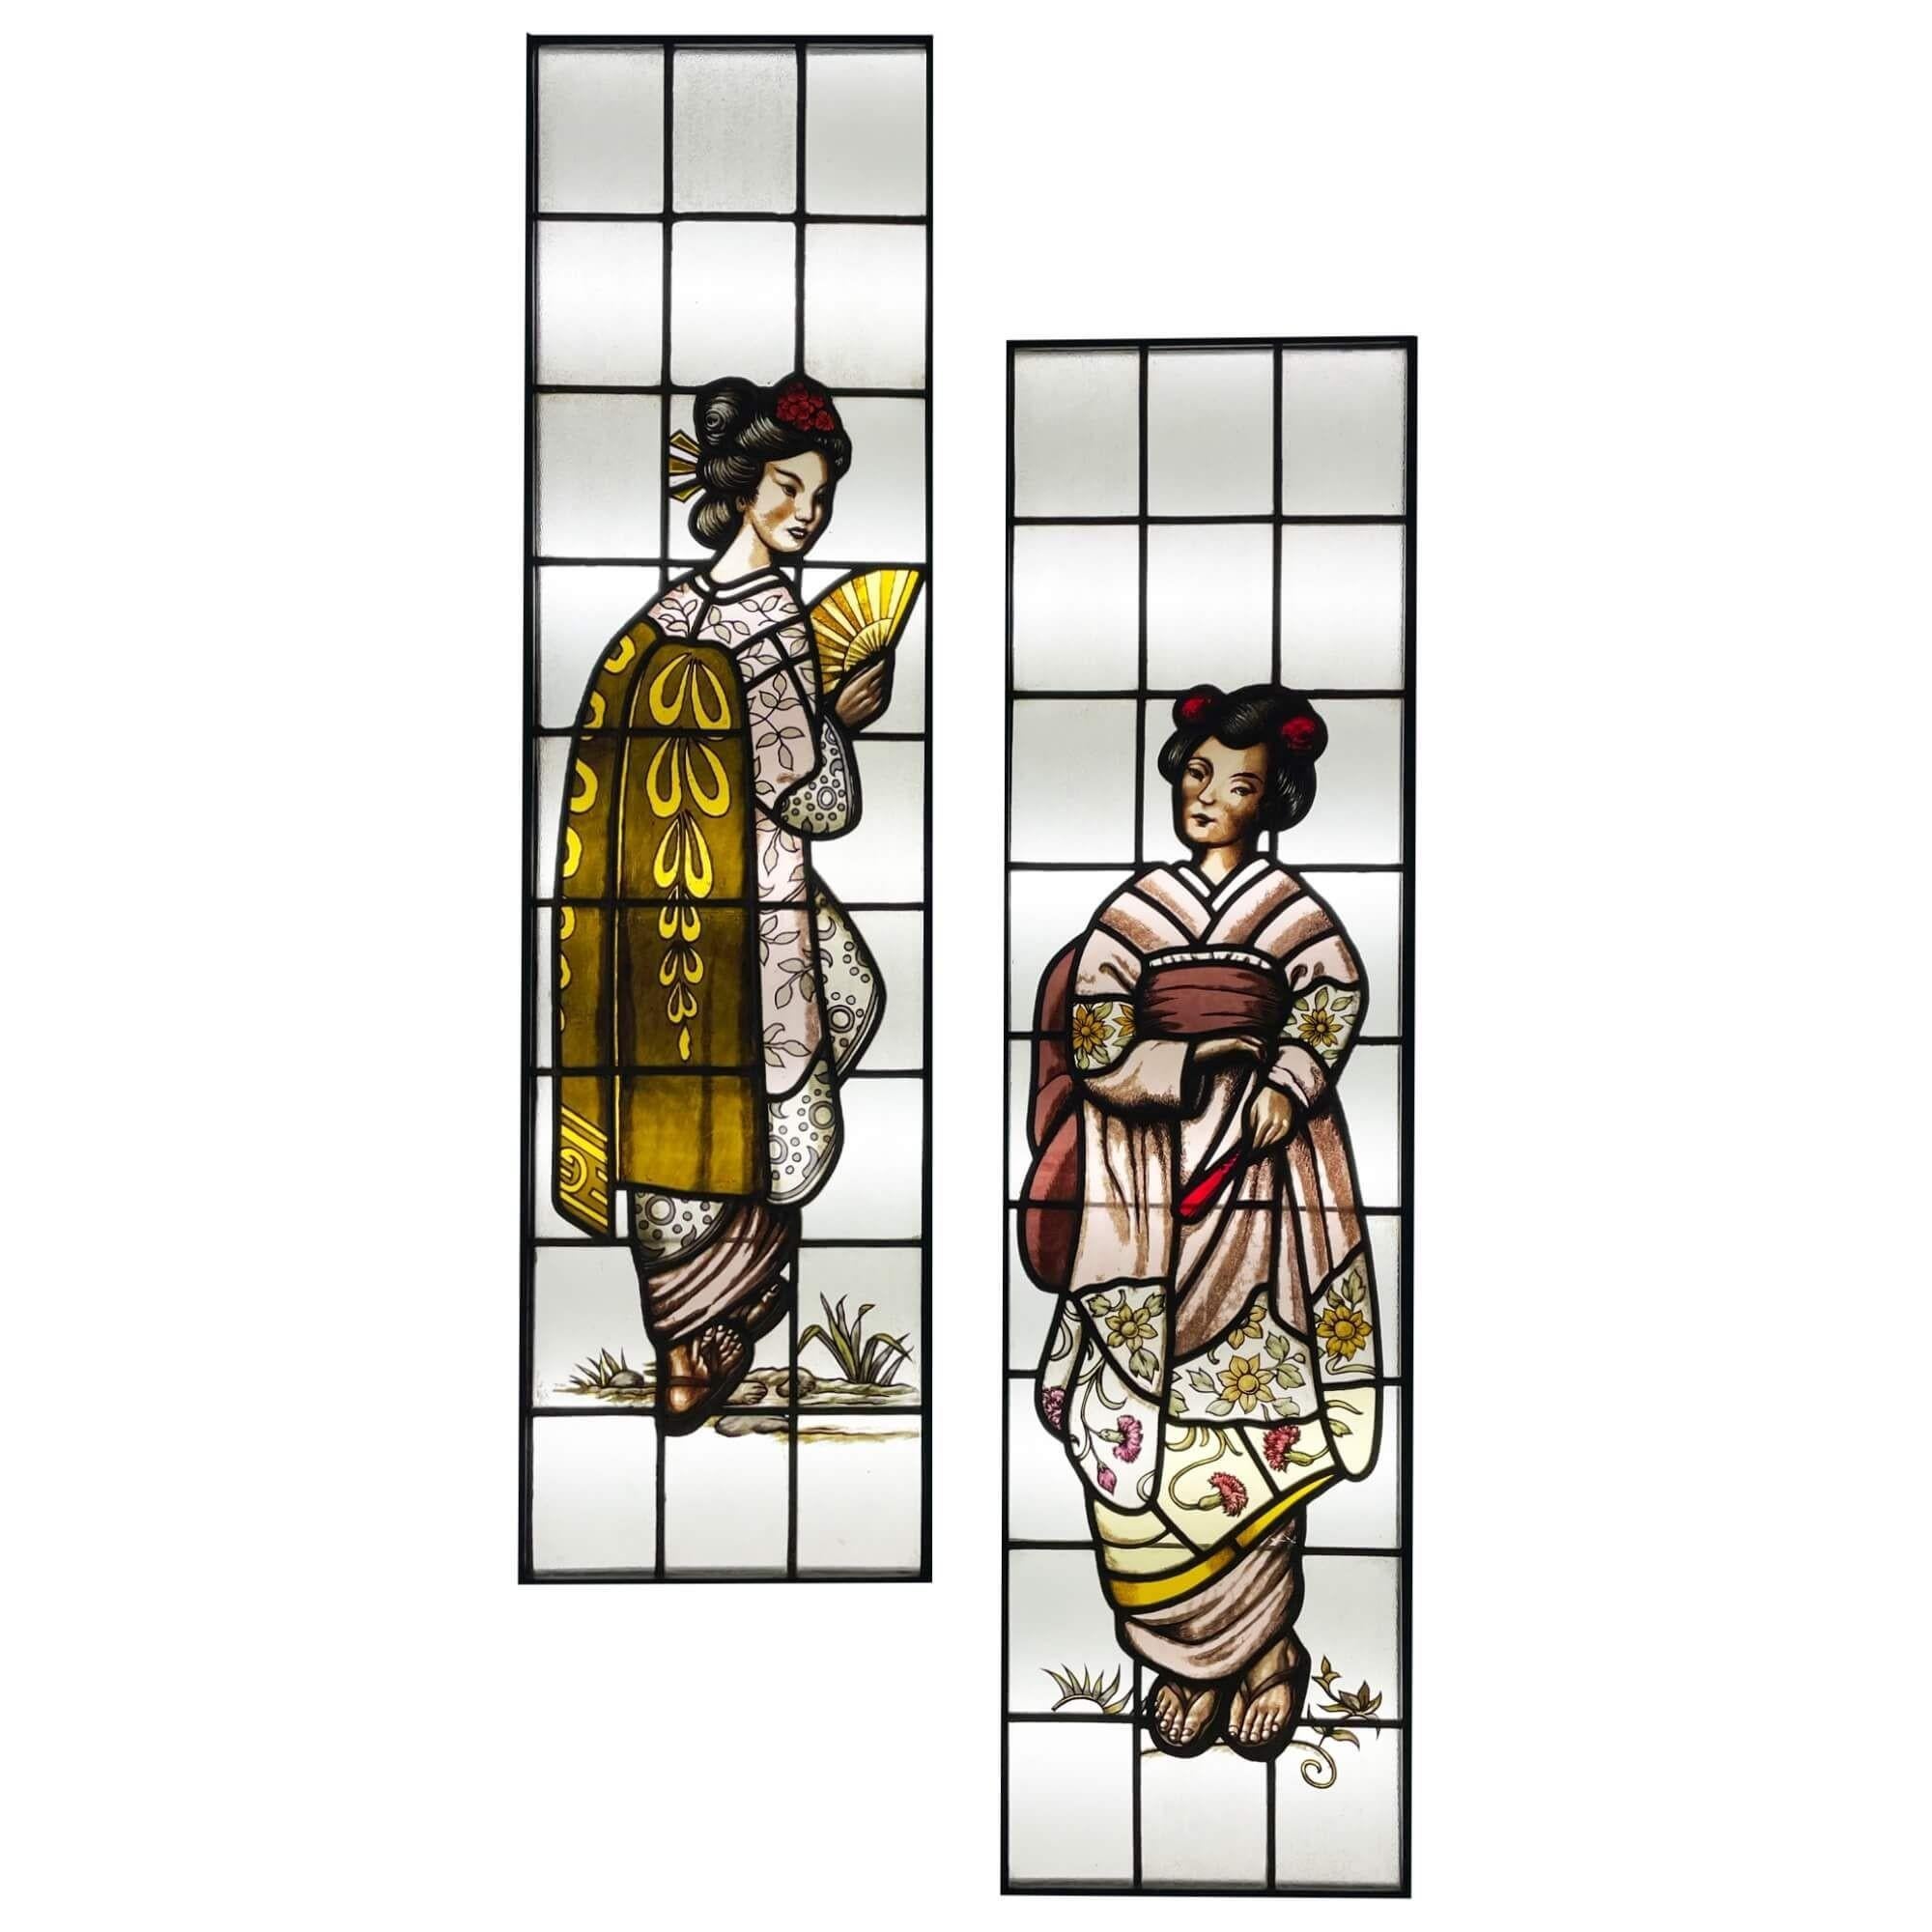 Ein Satz von 2 eleganten, handgemalten Glasmalereien im japanischen Stil, die in bemalte Holzrahmen eingesetzt sind. Mit einer Höhe von 147 cm sind diese hohen Buntglasscheiben ein wunderschönes Fensterset für eine Einrichtung im japanischen Stil